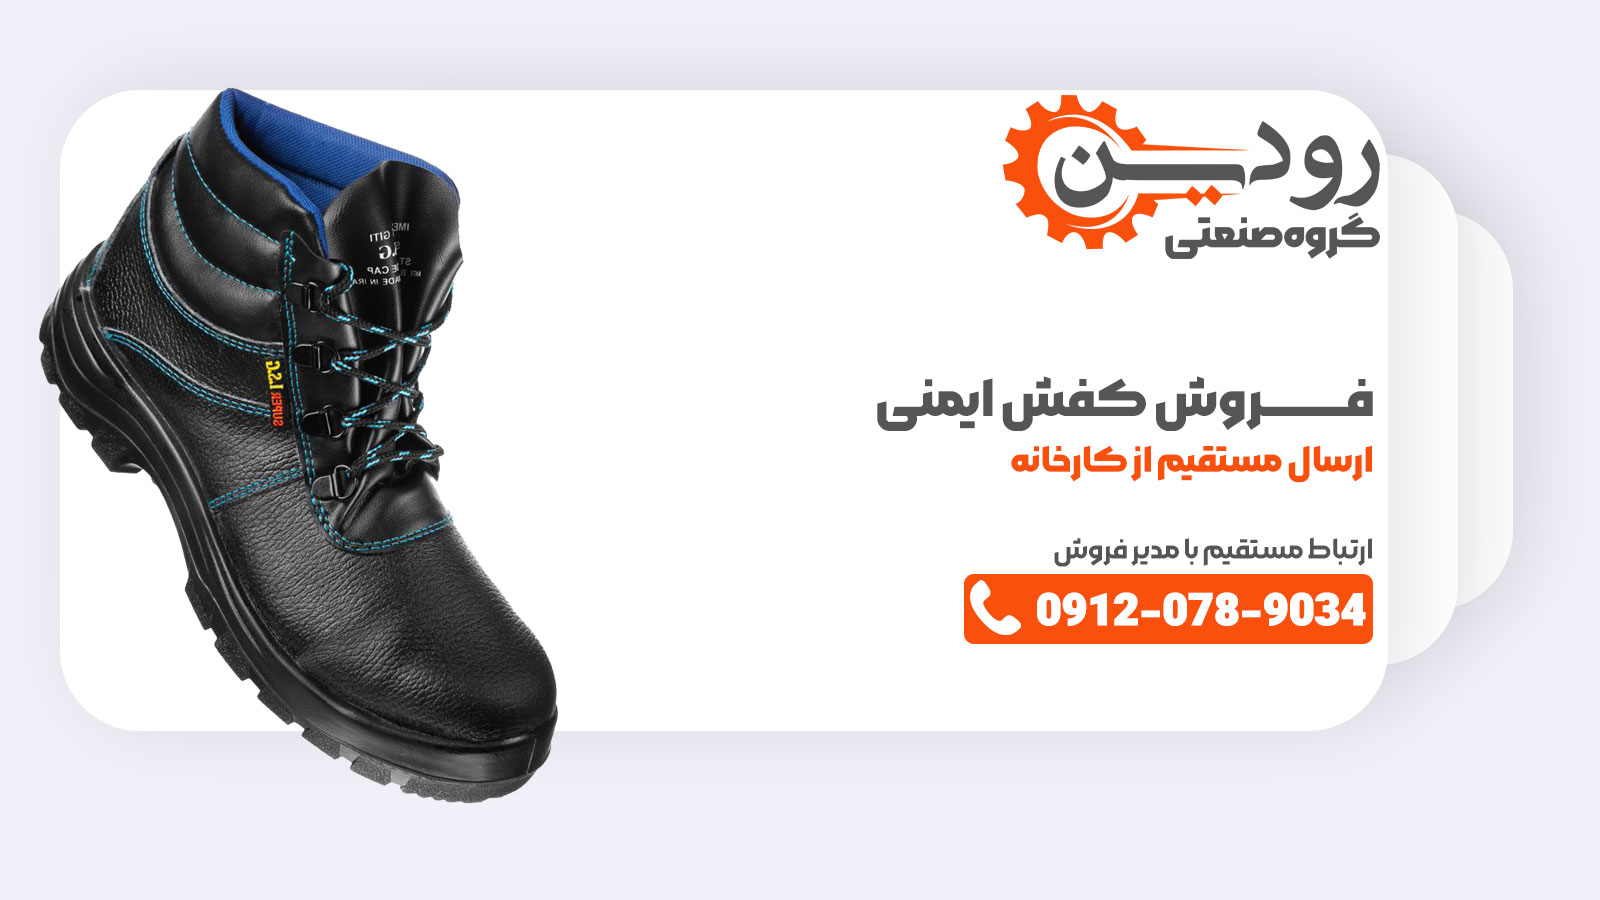 کارخانه تولید کفش ایمنی در رشت بهترین کفش ایمنی کشور را به تولید رسانده و جهت صادرات هم تولید میکند.